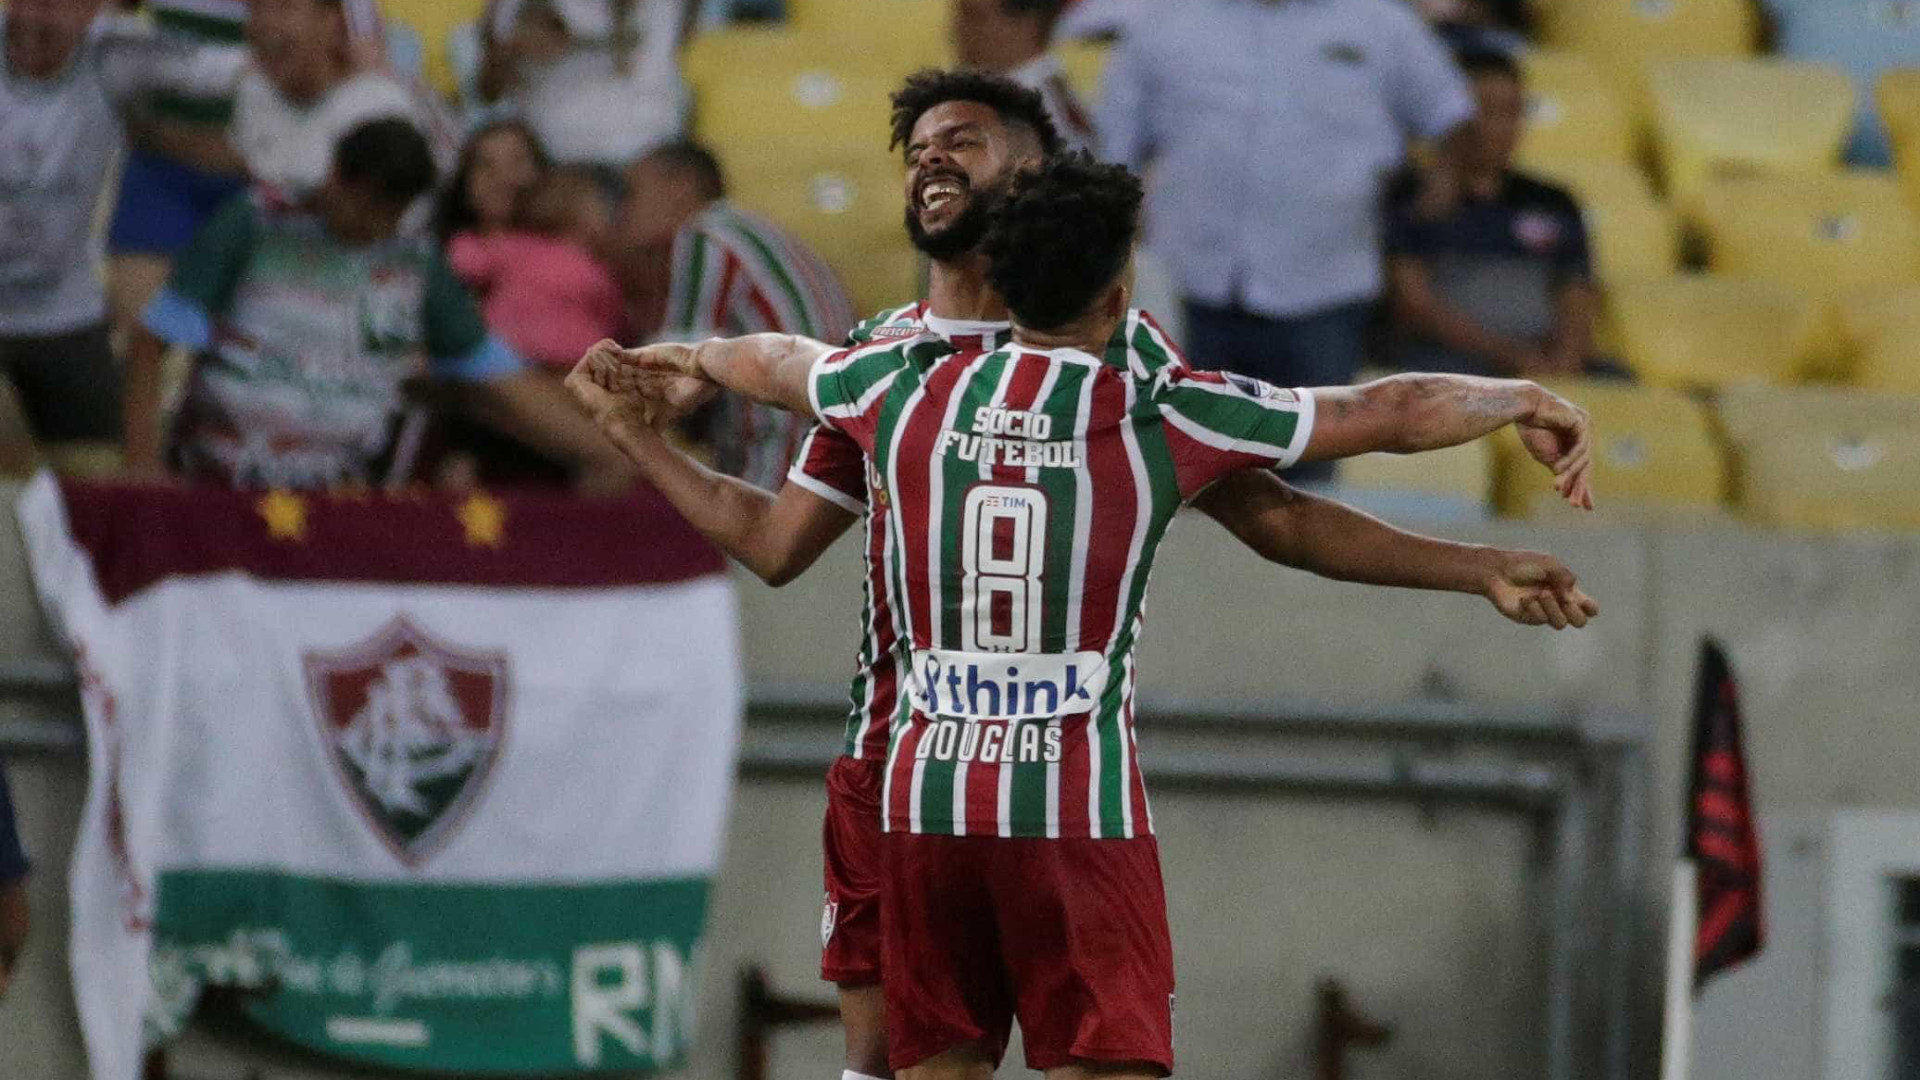 Flu vira e bate Botafogo com gol de revelação de torneio de favelas